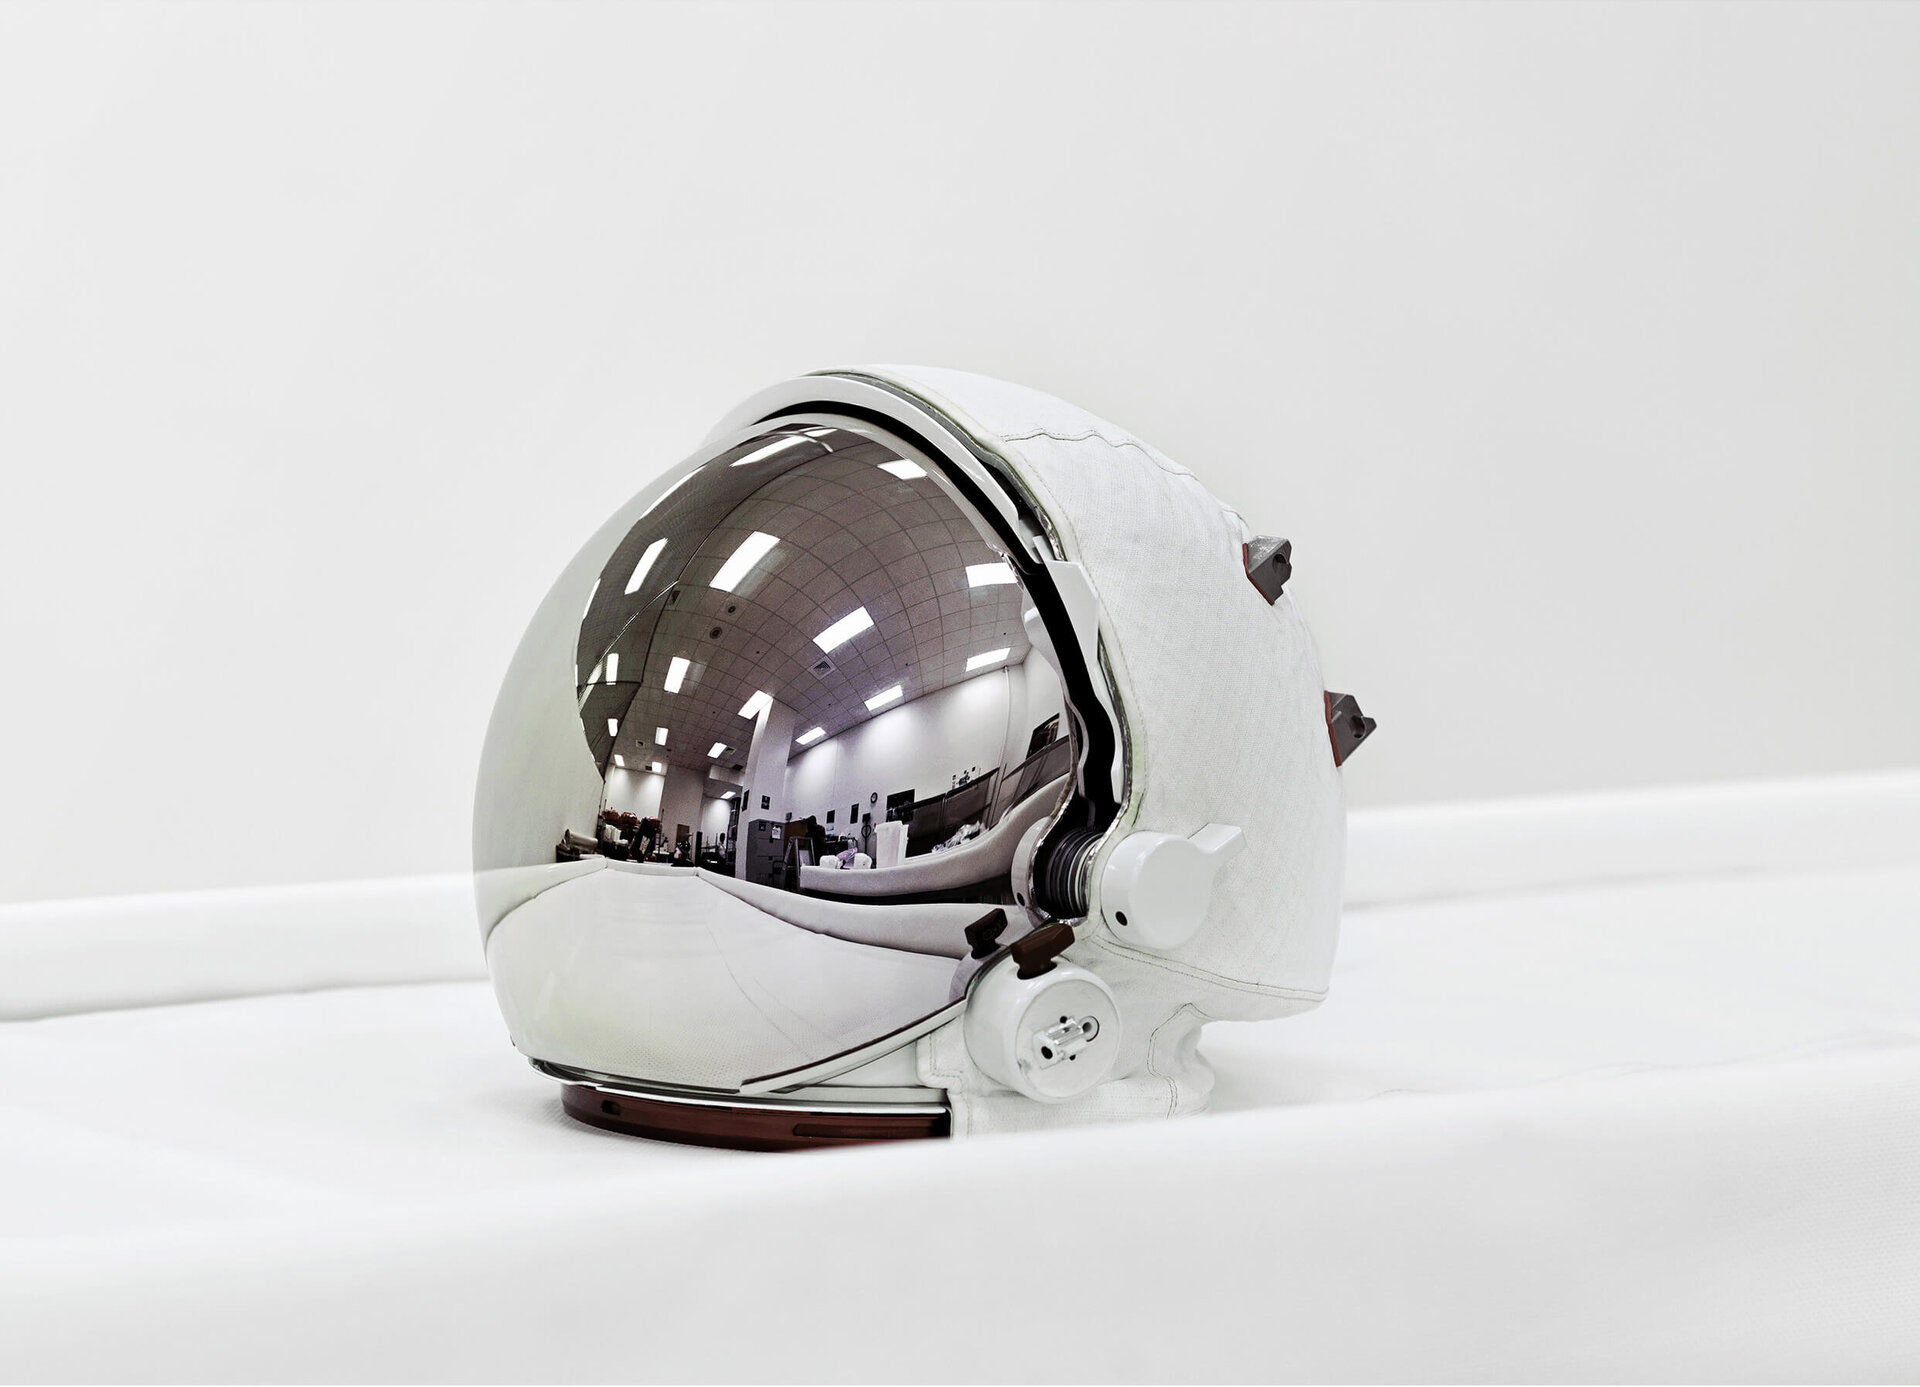 Space helmet